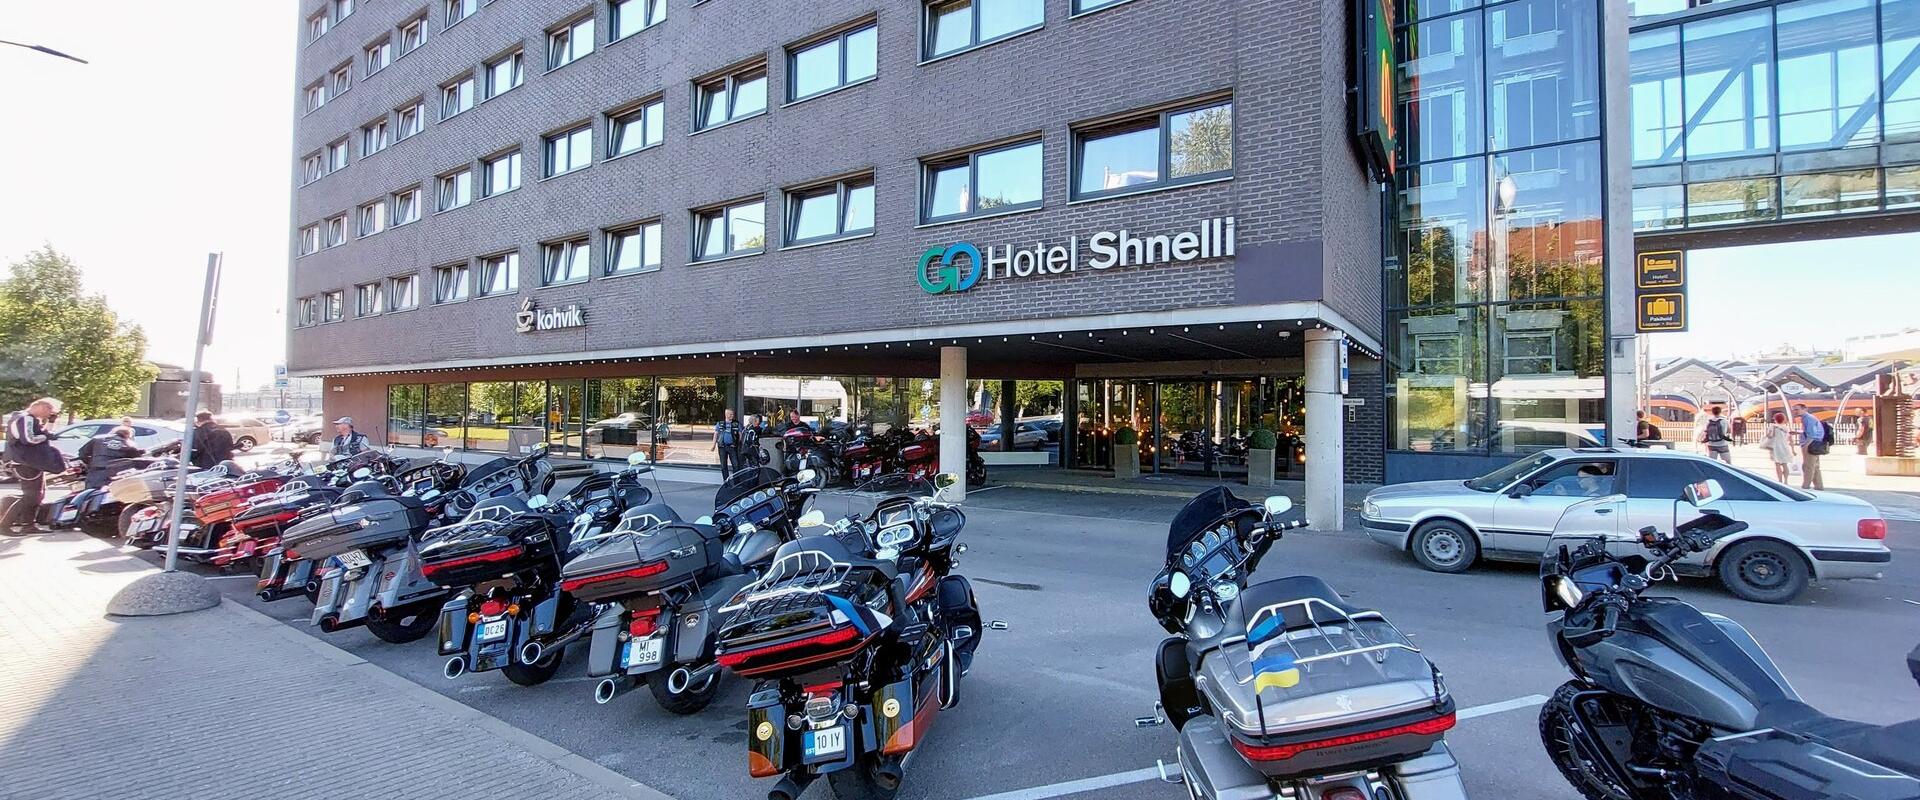 Go Hotel Shnelli parking